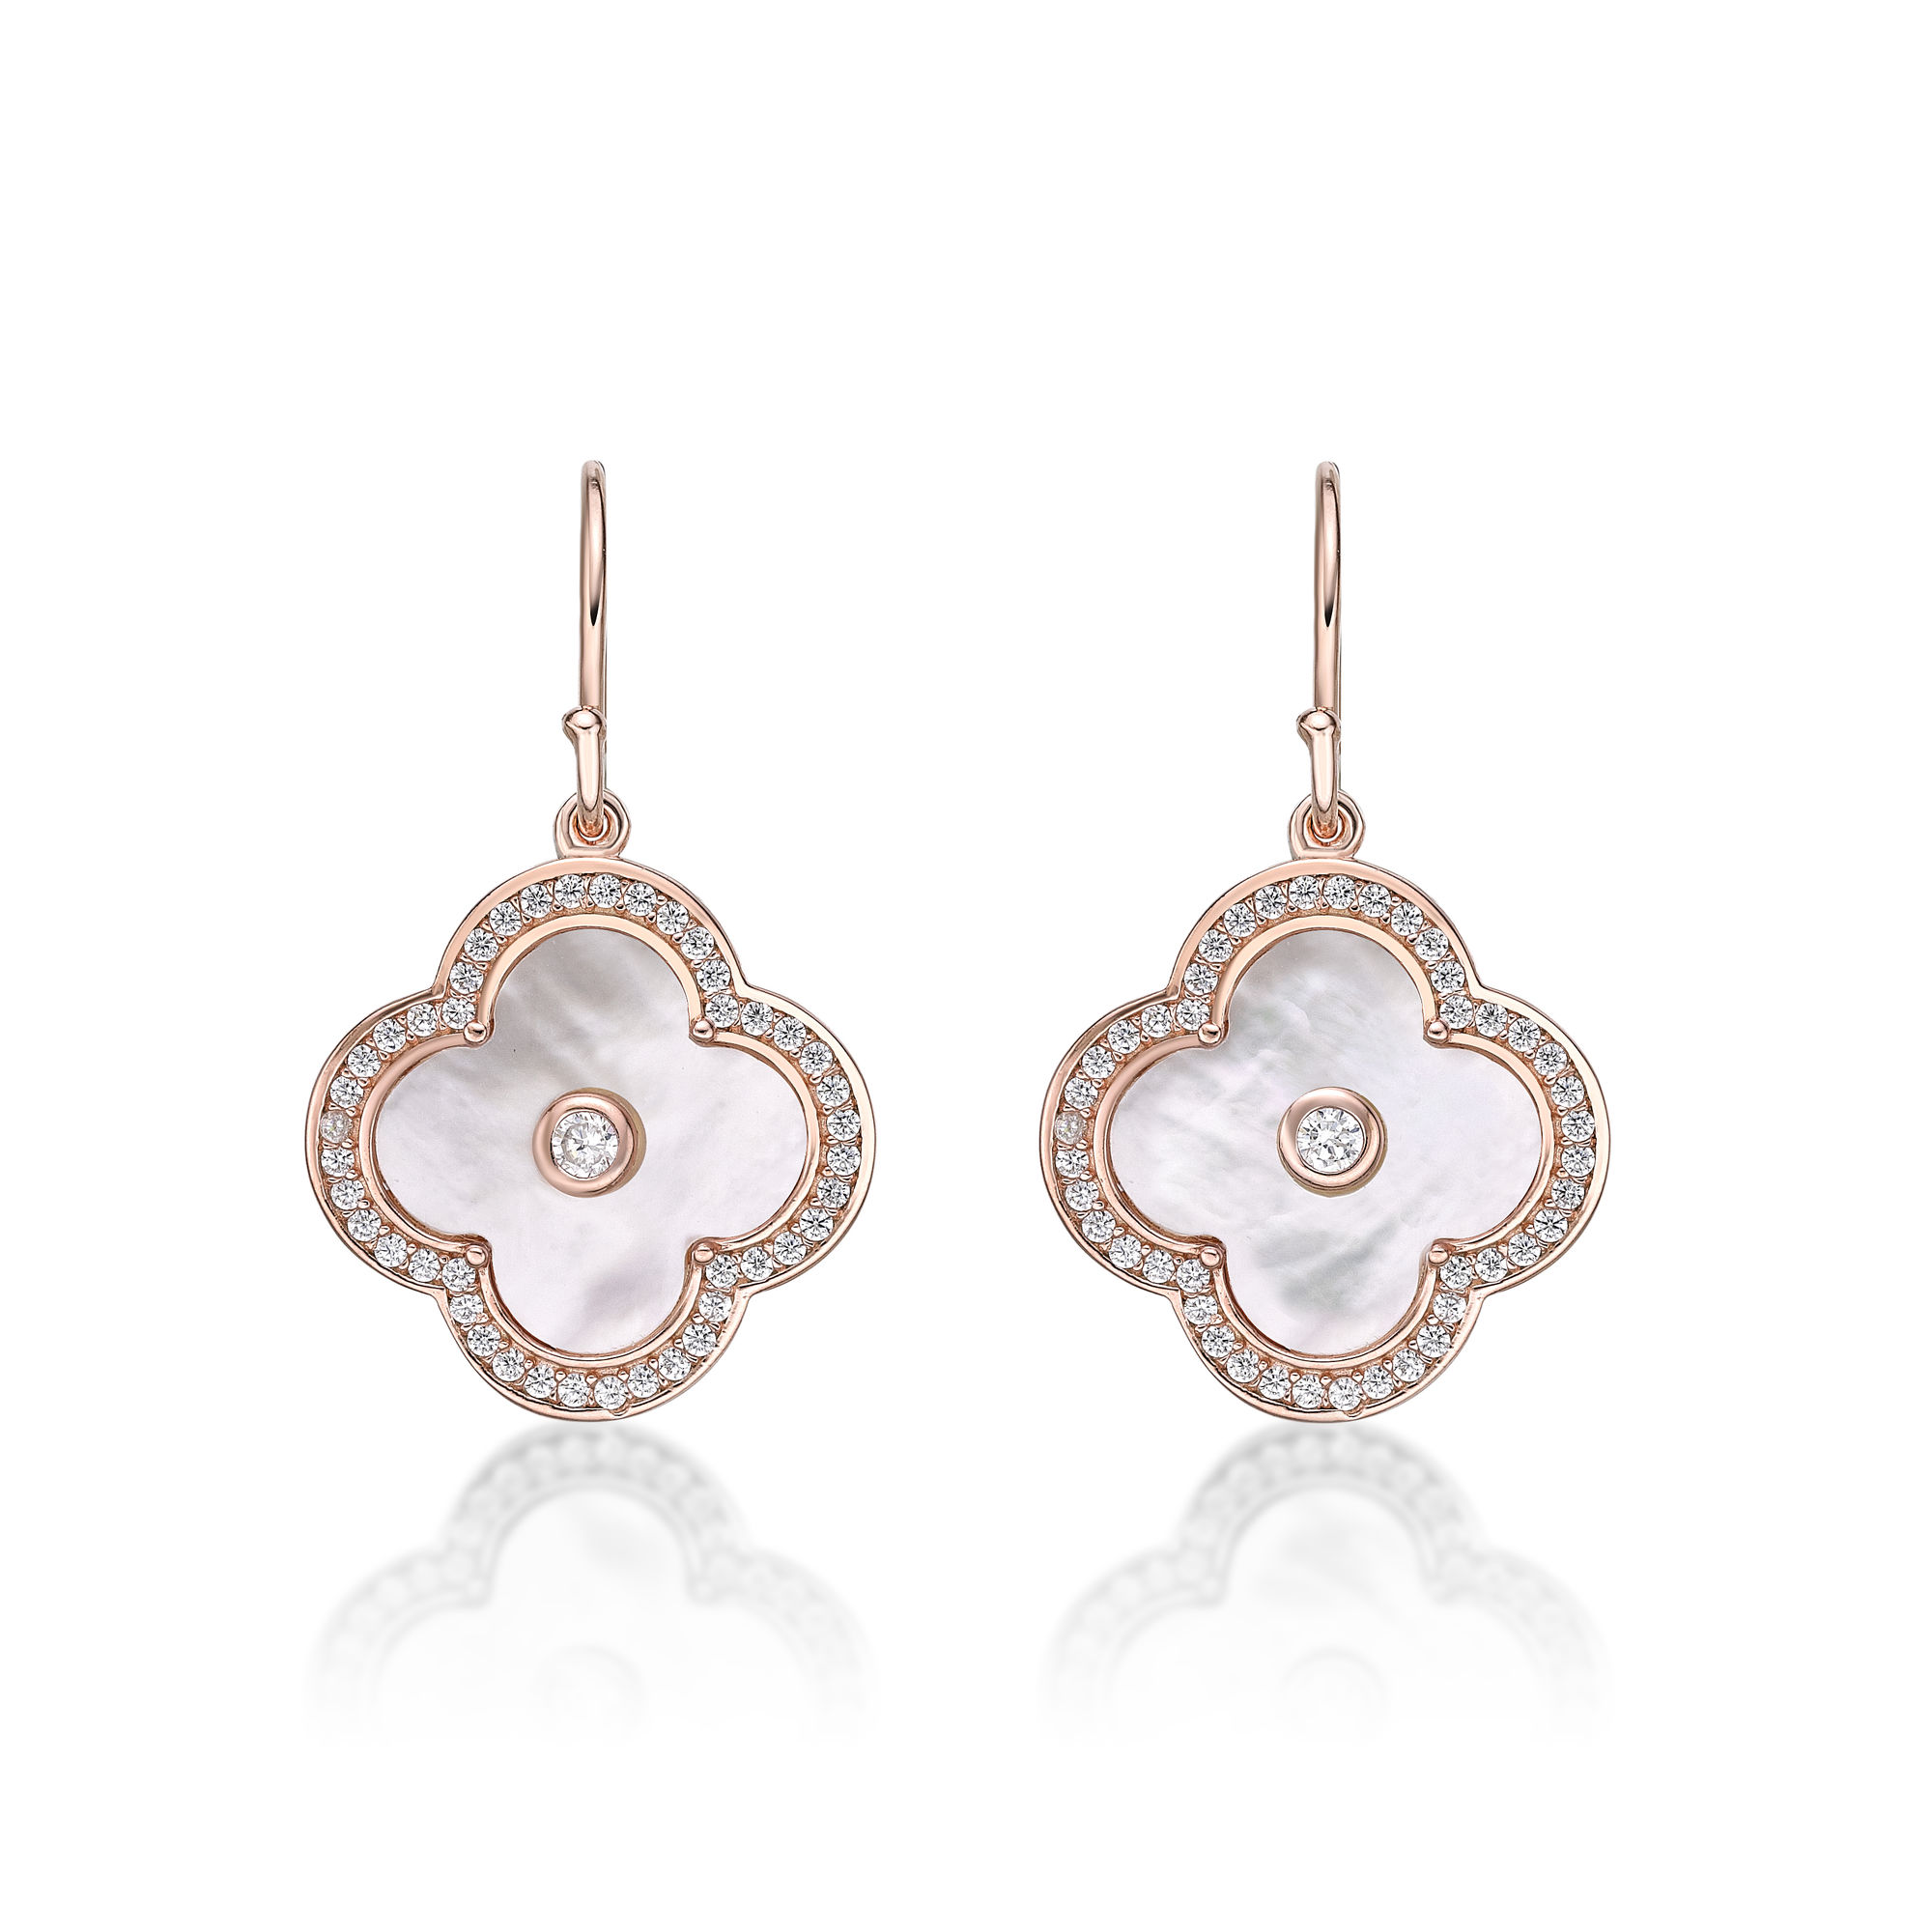 48816-earrings-fashion-jewelry-pink-sterling-silver-48816-3.jpg